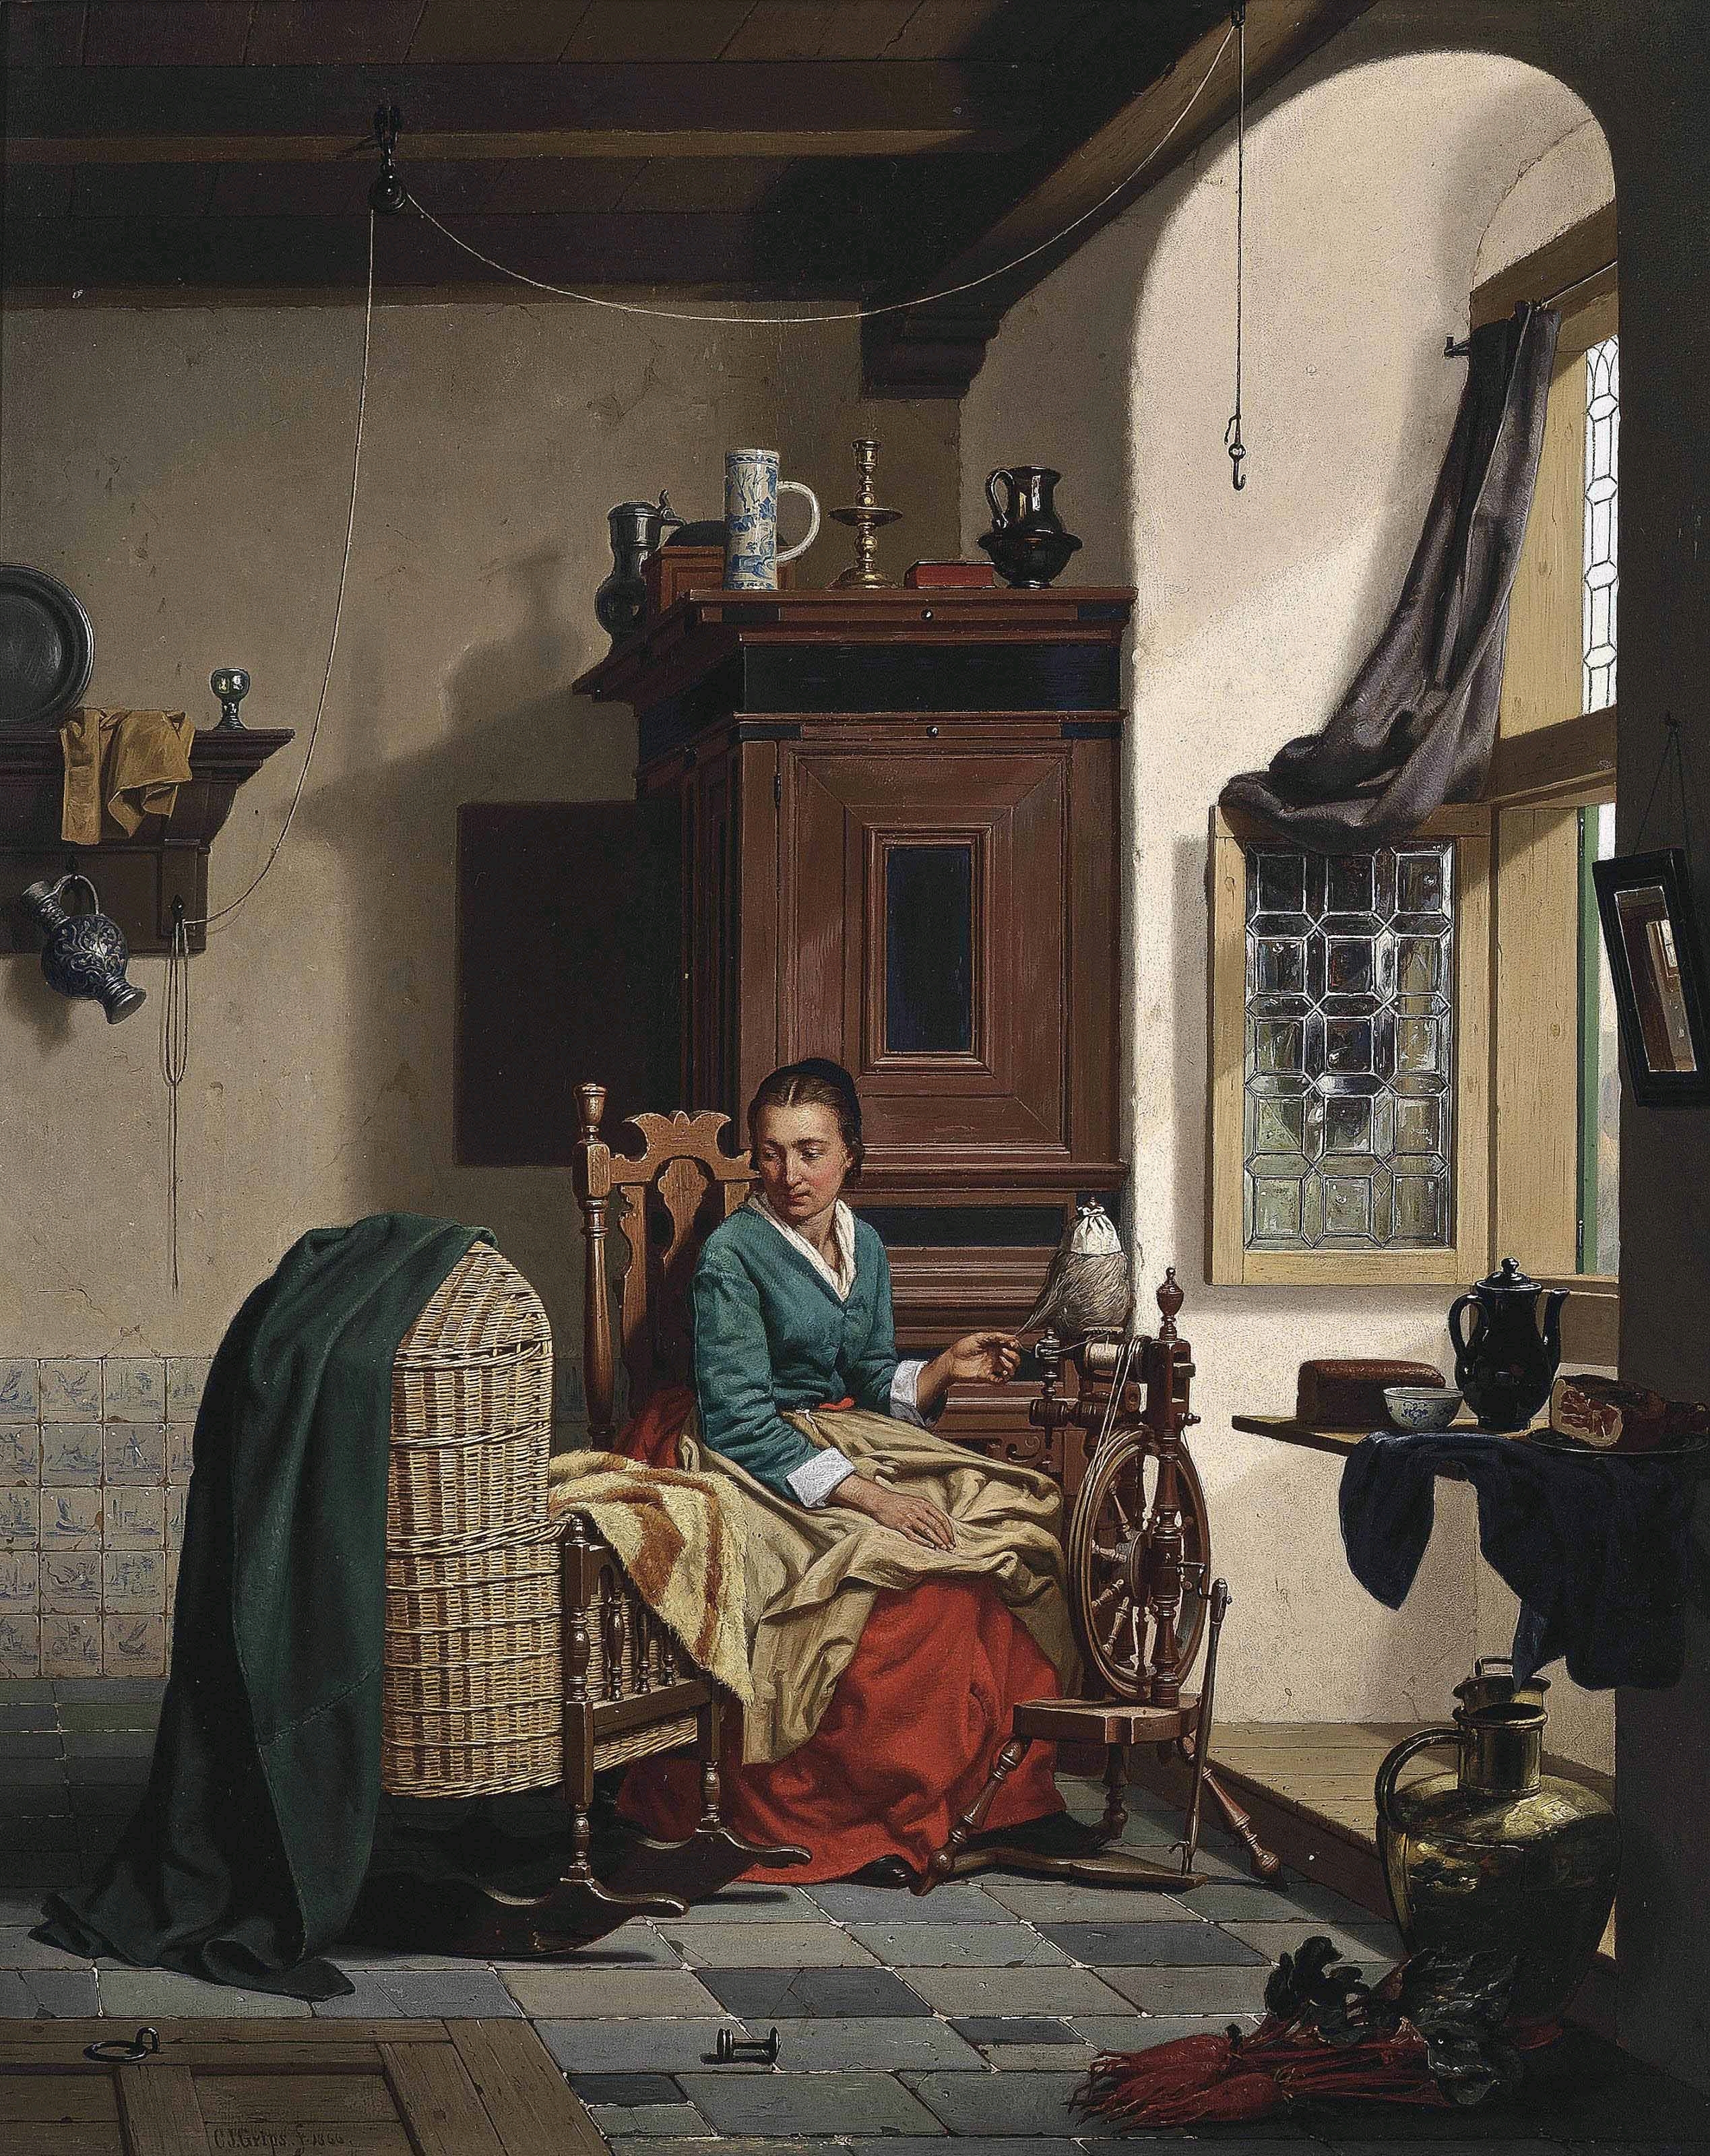 Charles Joseph Grips - The Spinner's Favorite, 1866